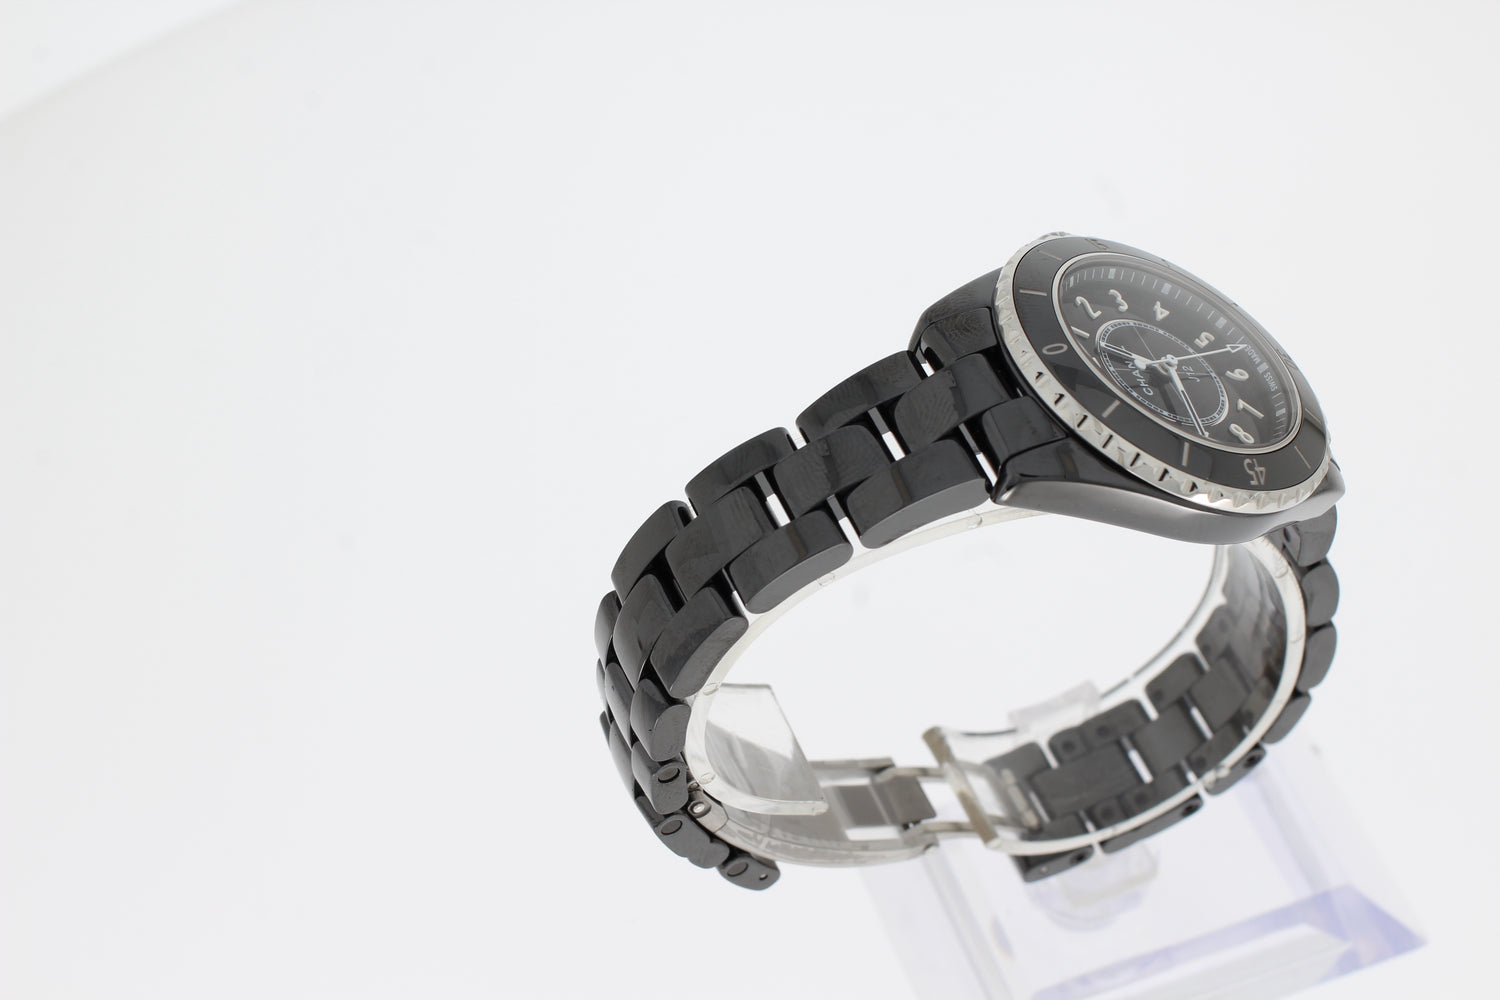 Pre-owned Chanel J12 33mm Titanium Ceramic Quartz Watch